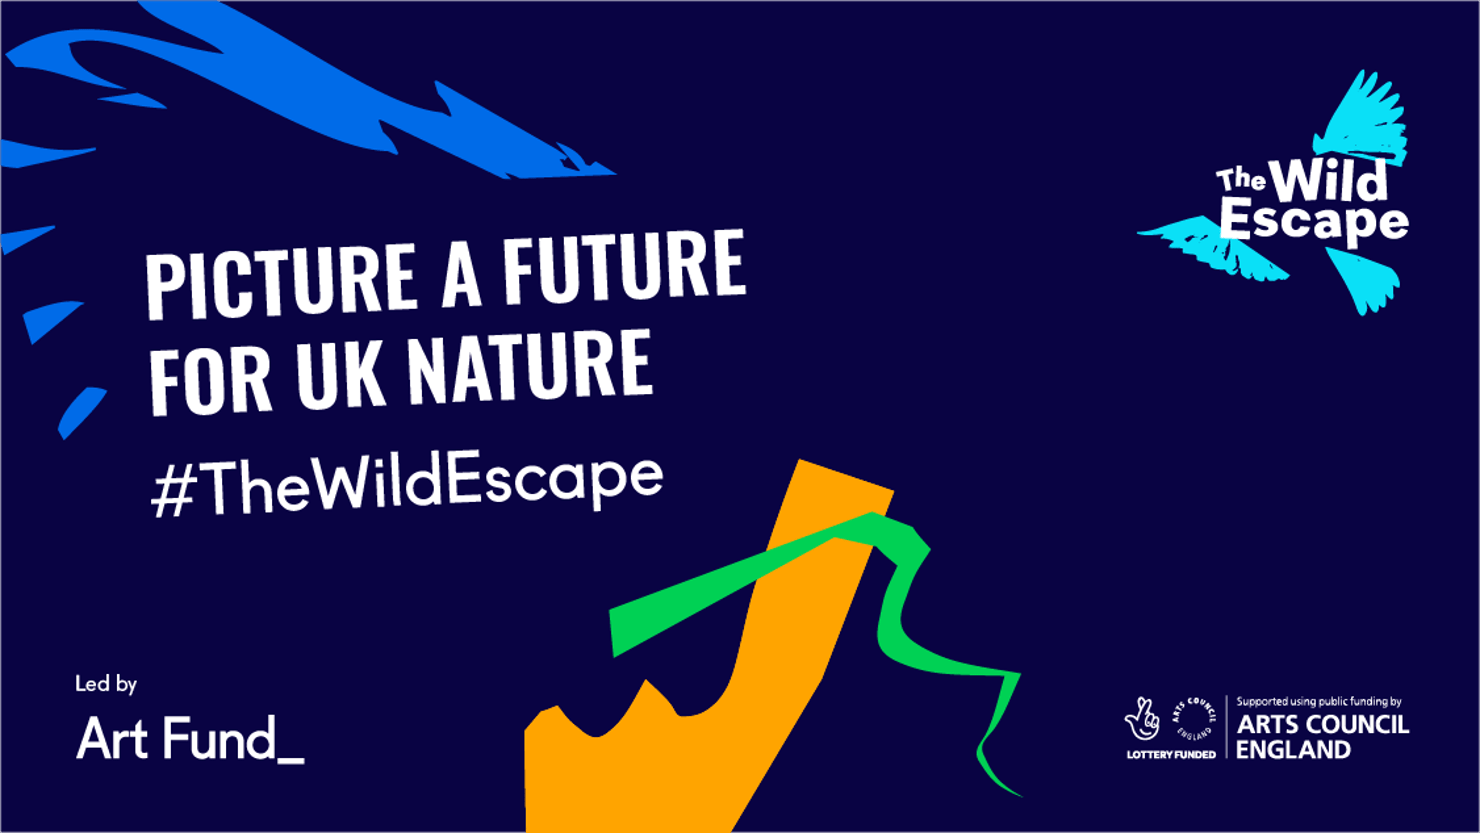 The Wild Escape - Picture a future graphic